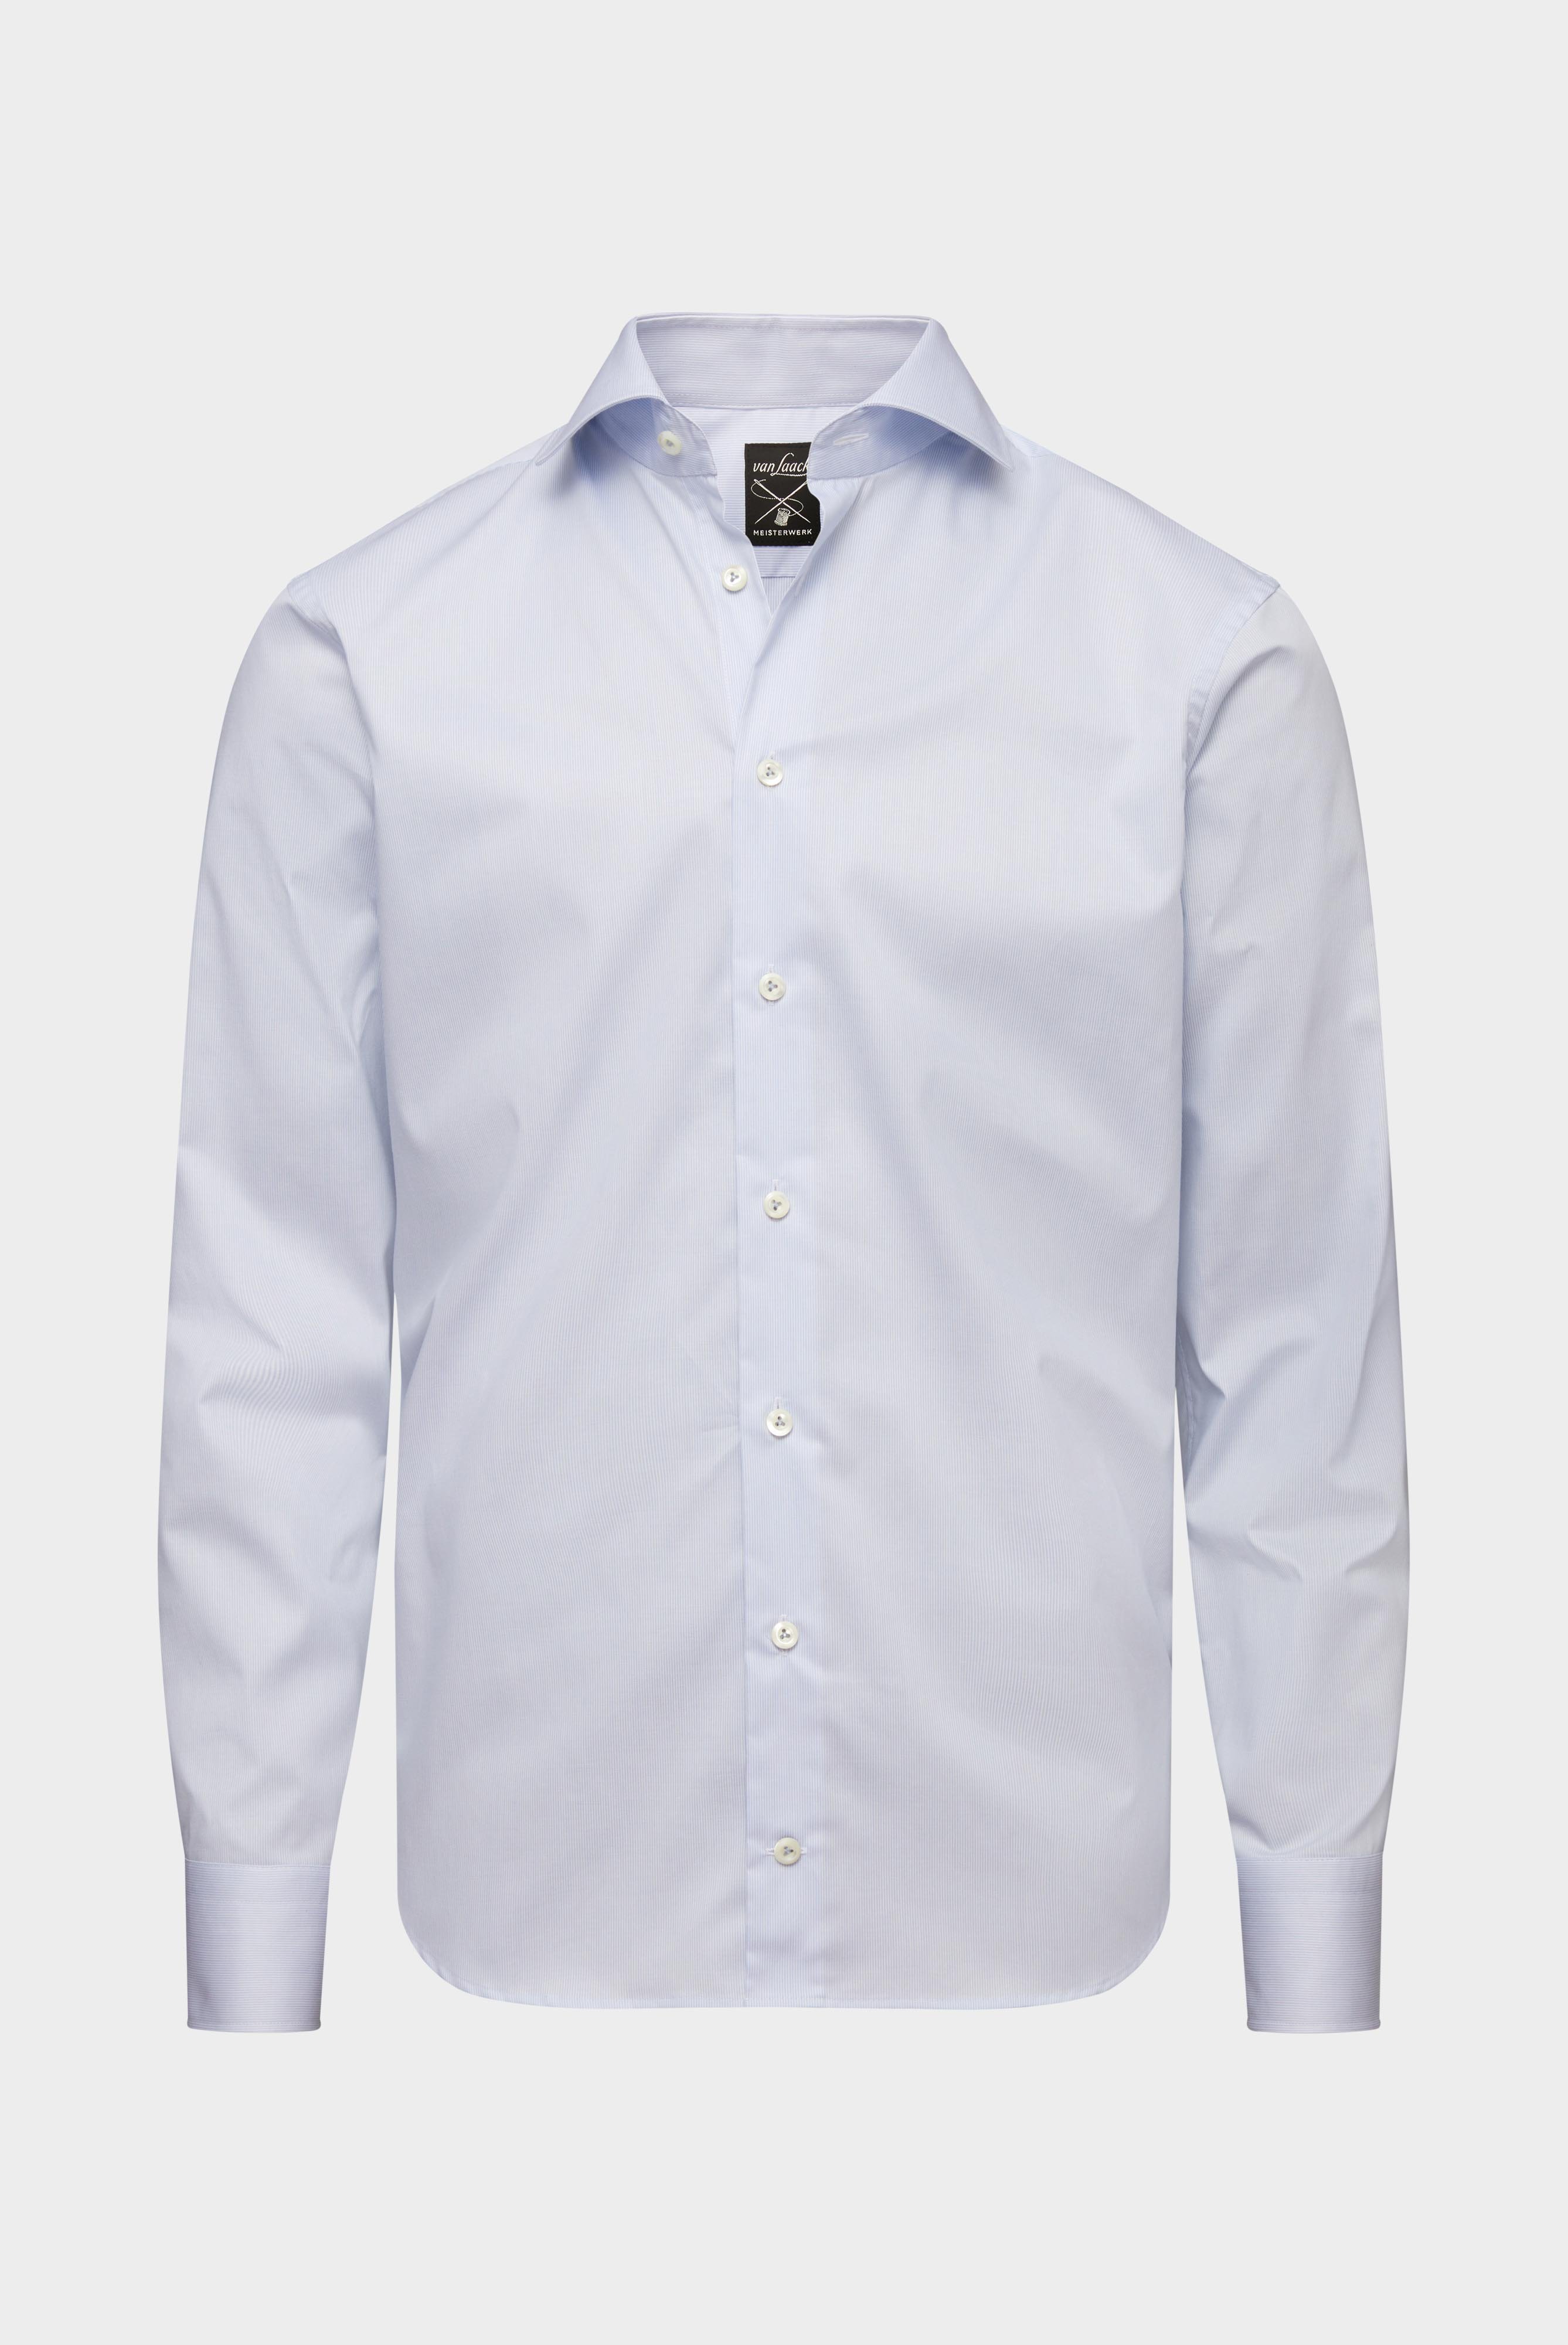 Bügelleichte Hemden+Bügelfreies Twill Hemd Slim Fit+20.2019.BQ.132959.720.37